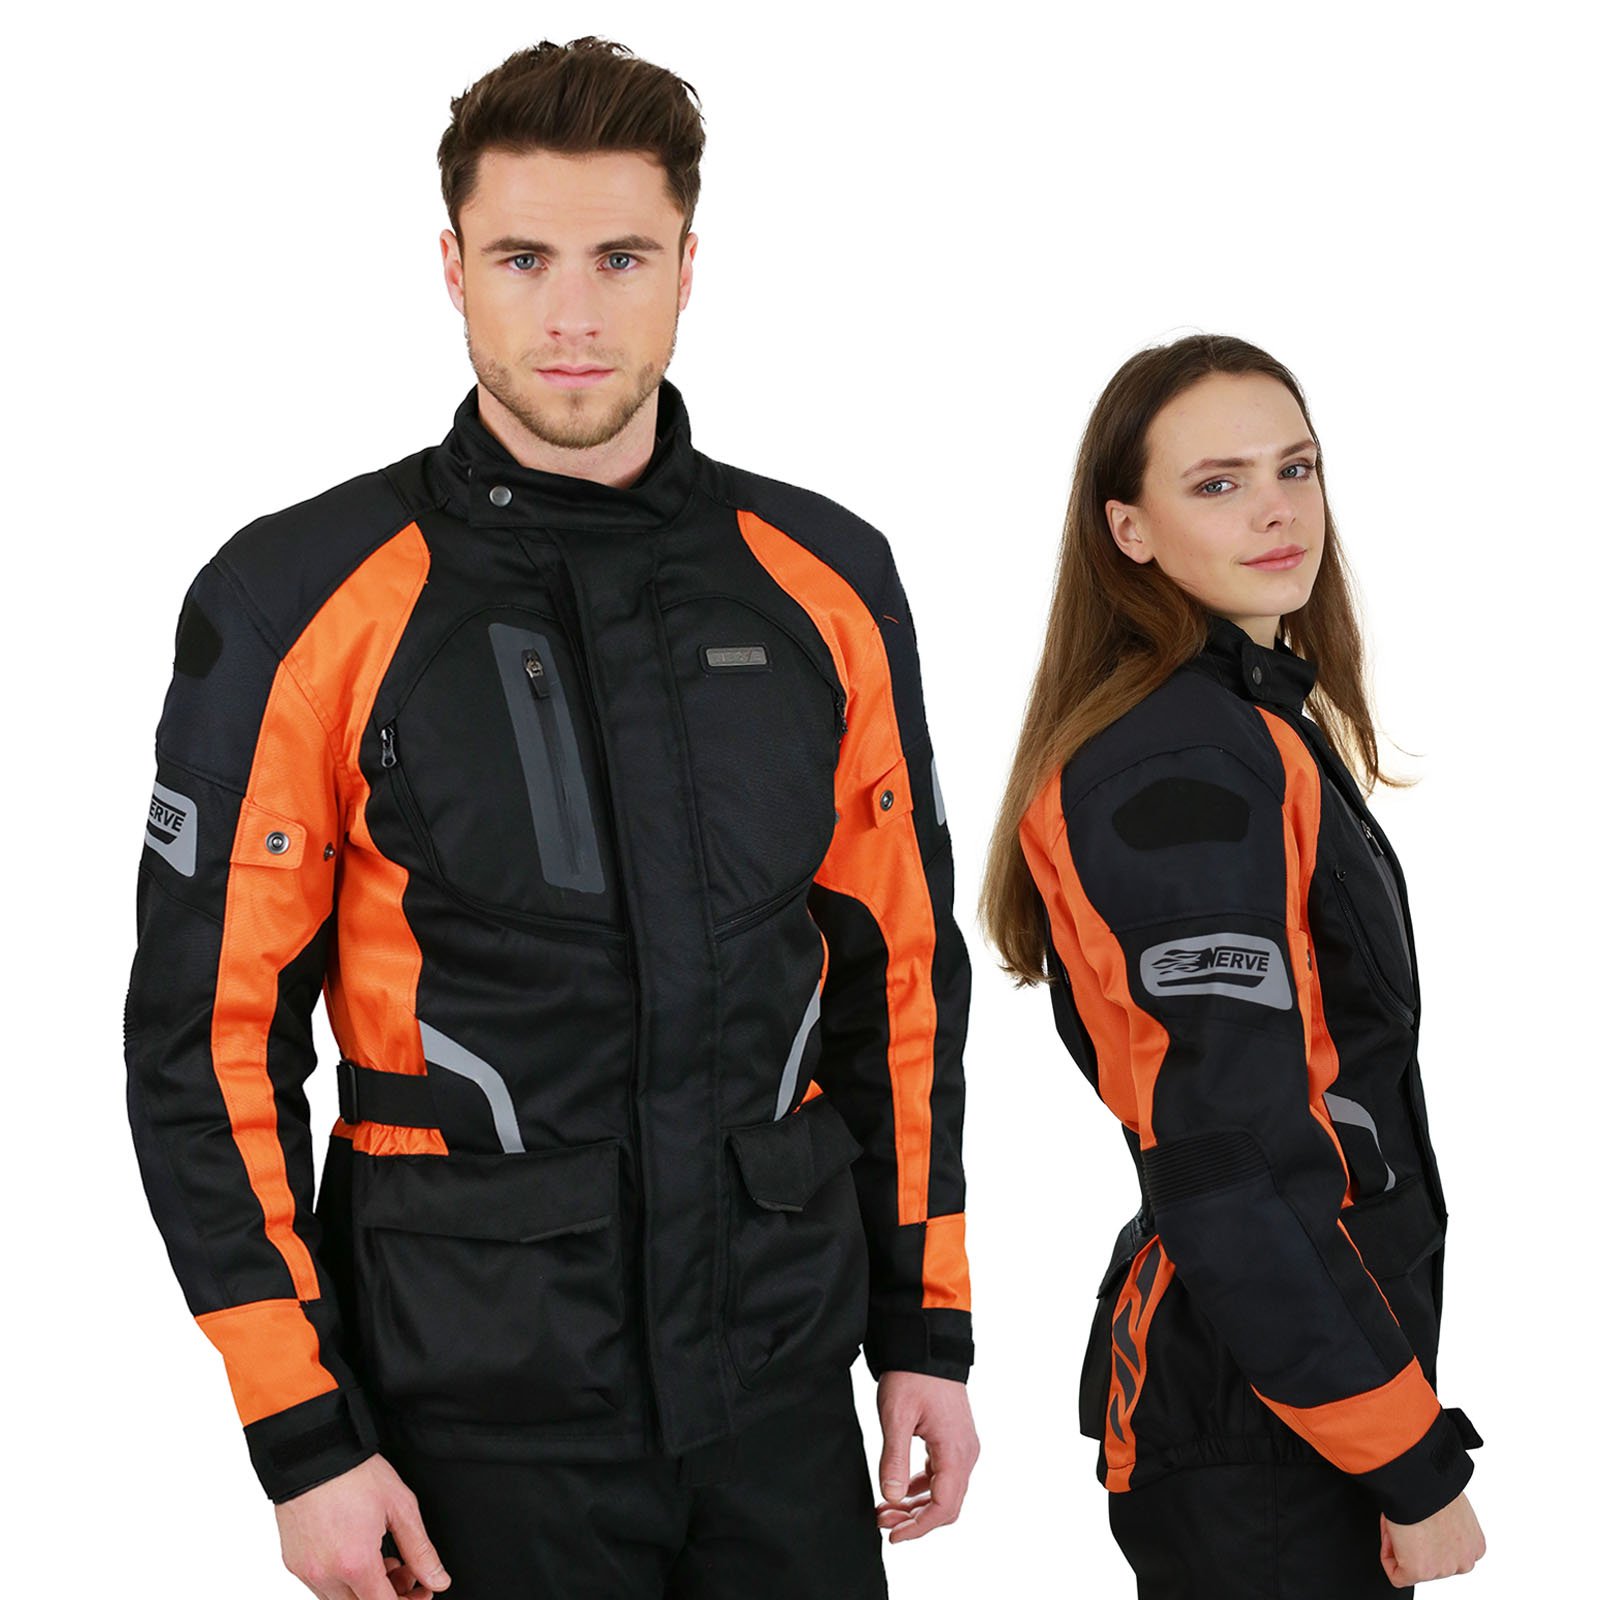 Nerve Shop Motorradjacke -Spark- Sommer Winter Motorrad Roller Jacke Protektorenjacke Textil Herren Wasserdicht mit Protektoren - Schwarz-Neon-Orange - L